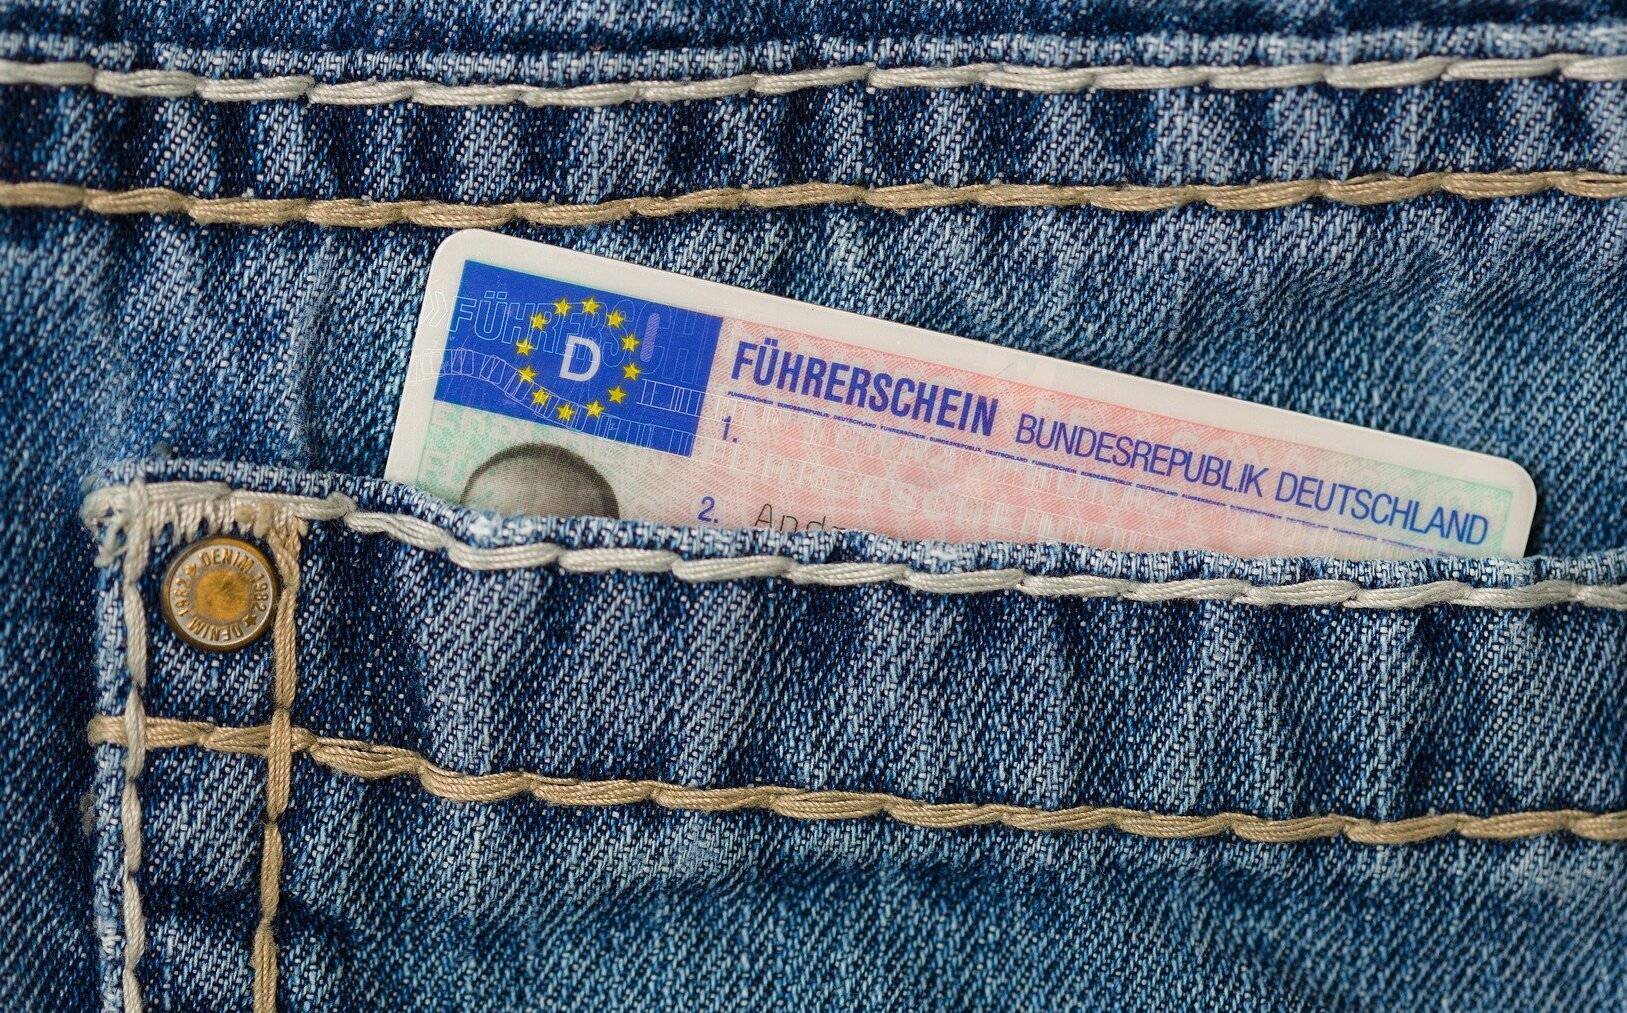 Der EU-Führerschein hat die Größe einer